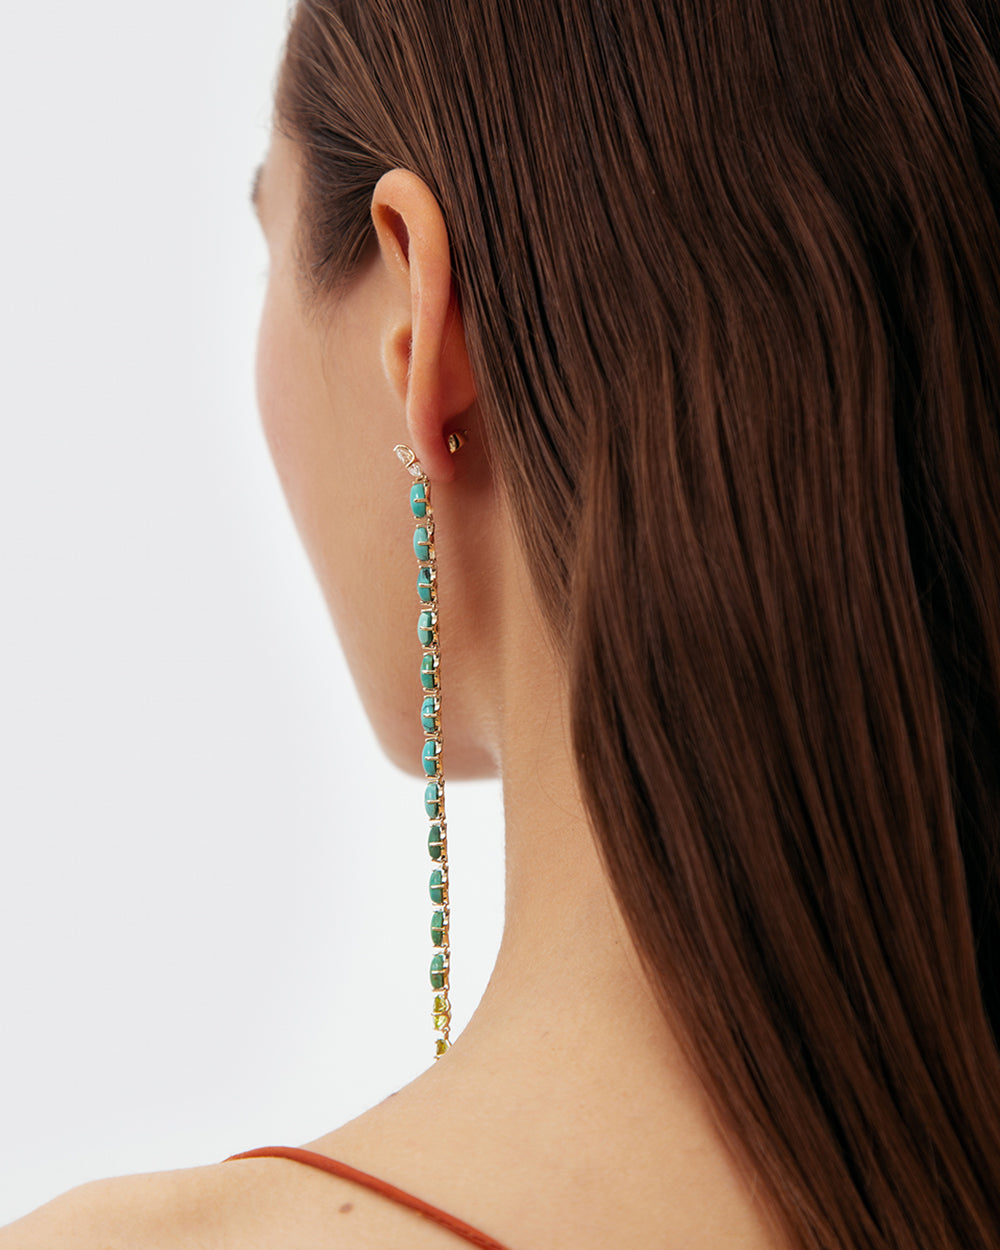 OC051 Turquoise snake earring